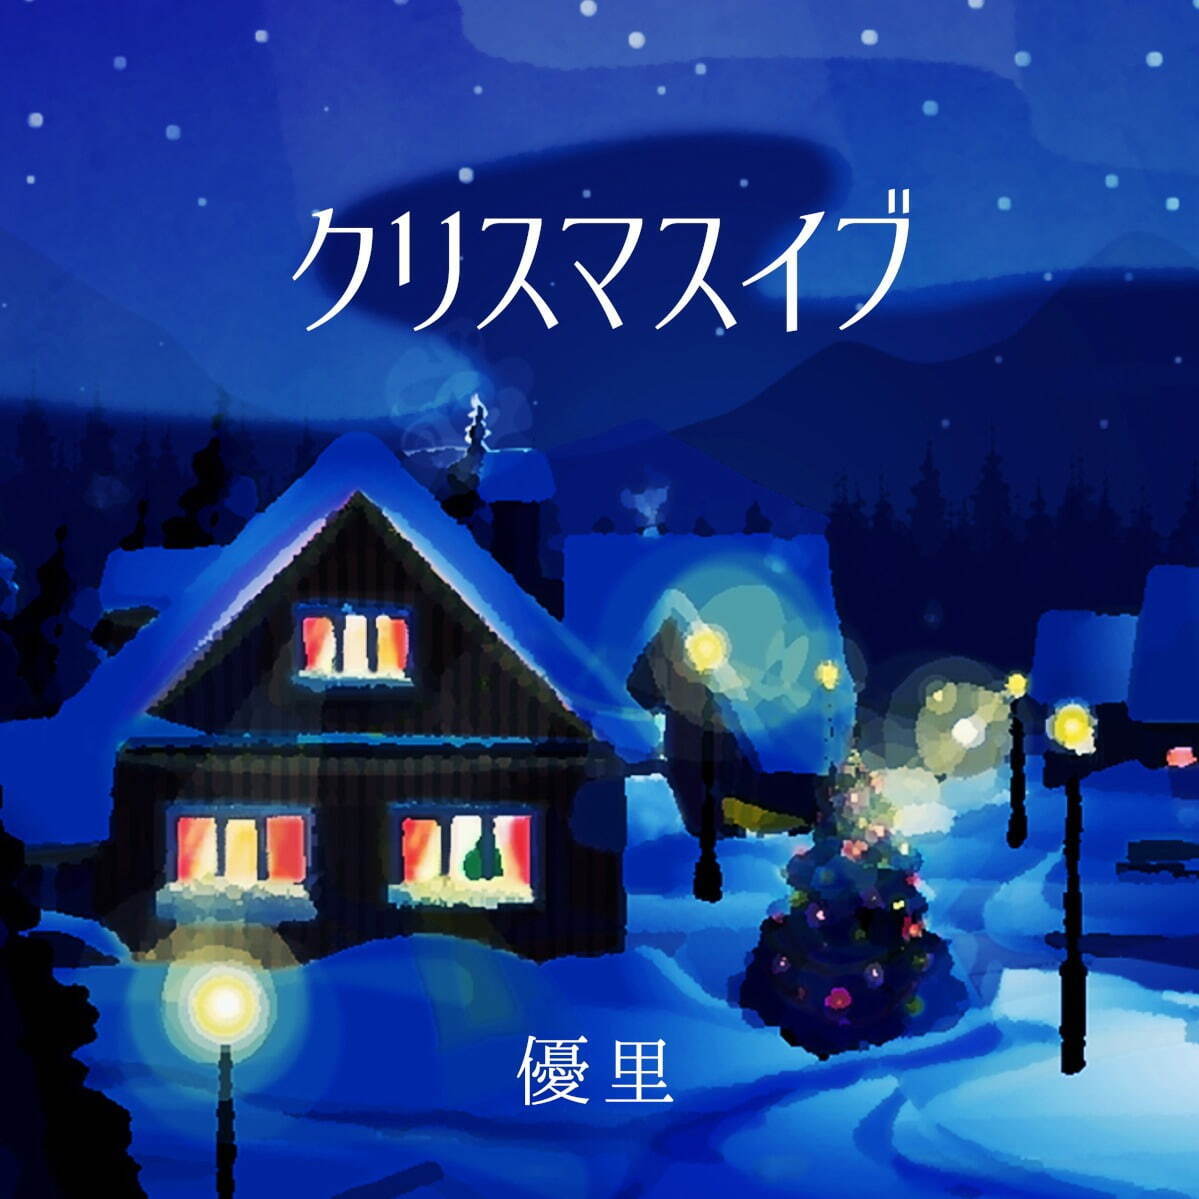 優里の新曲「クリスマスイブ」自身初のクリスマスソング ...